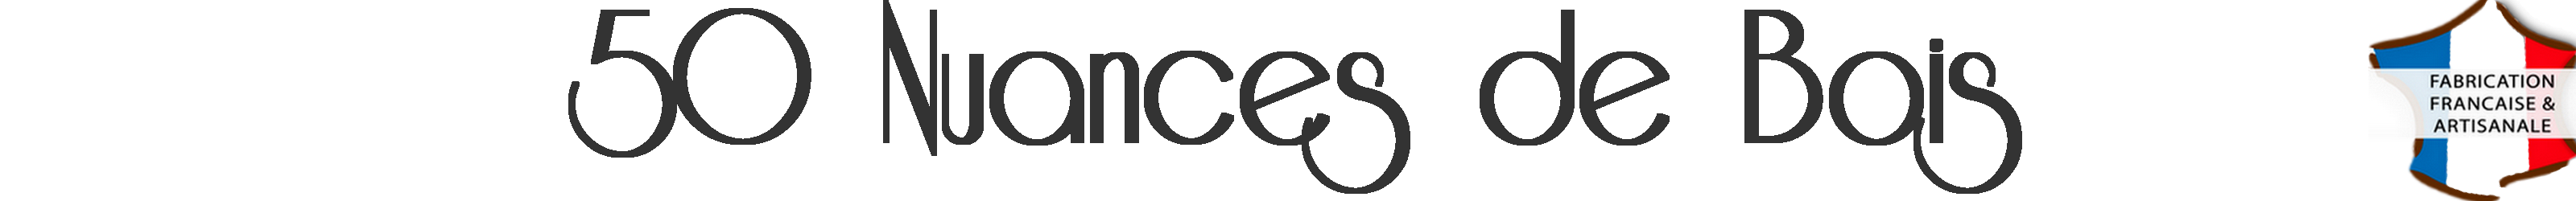 Logo 50 NUANCES DE BOIS